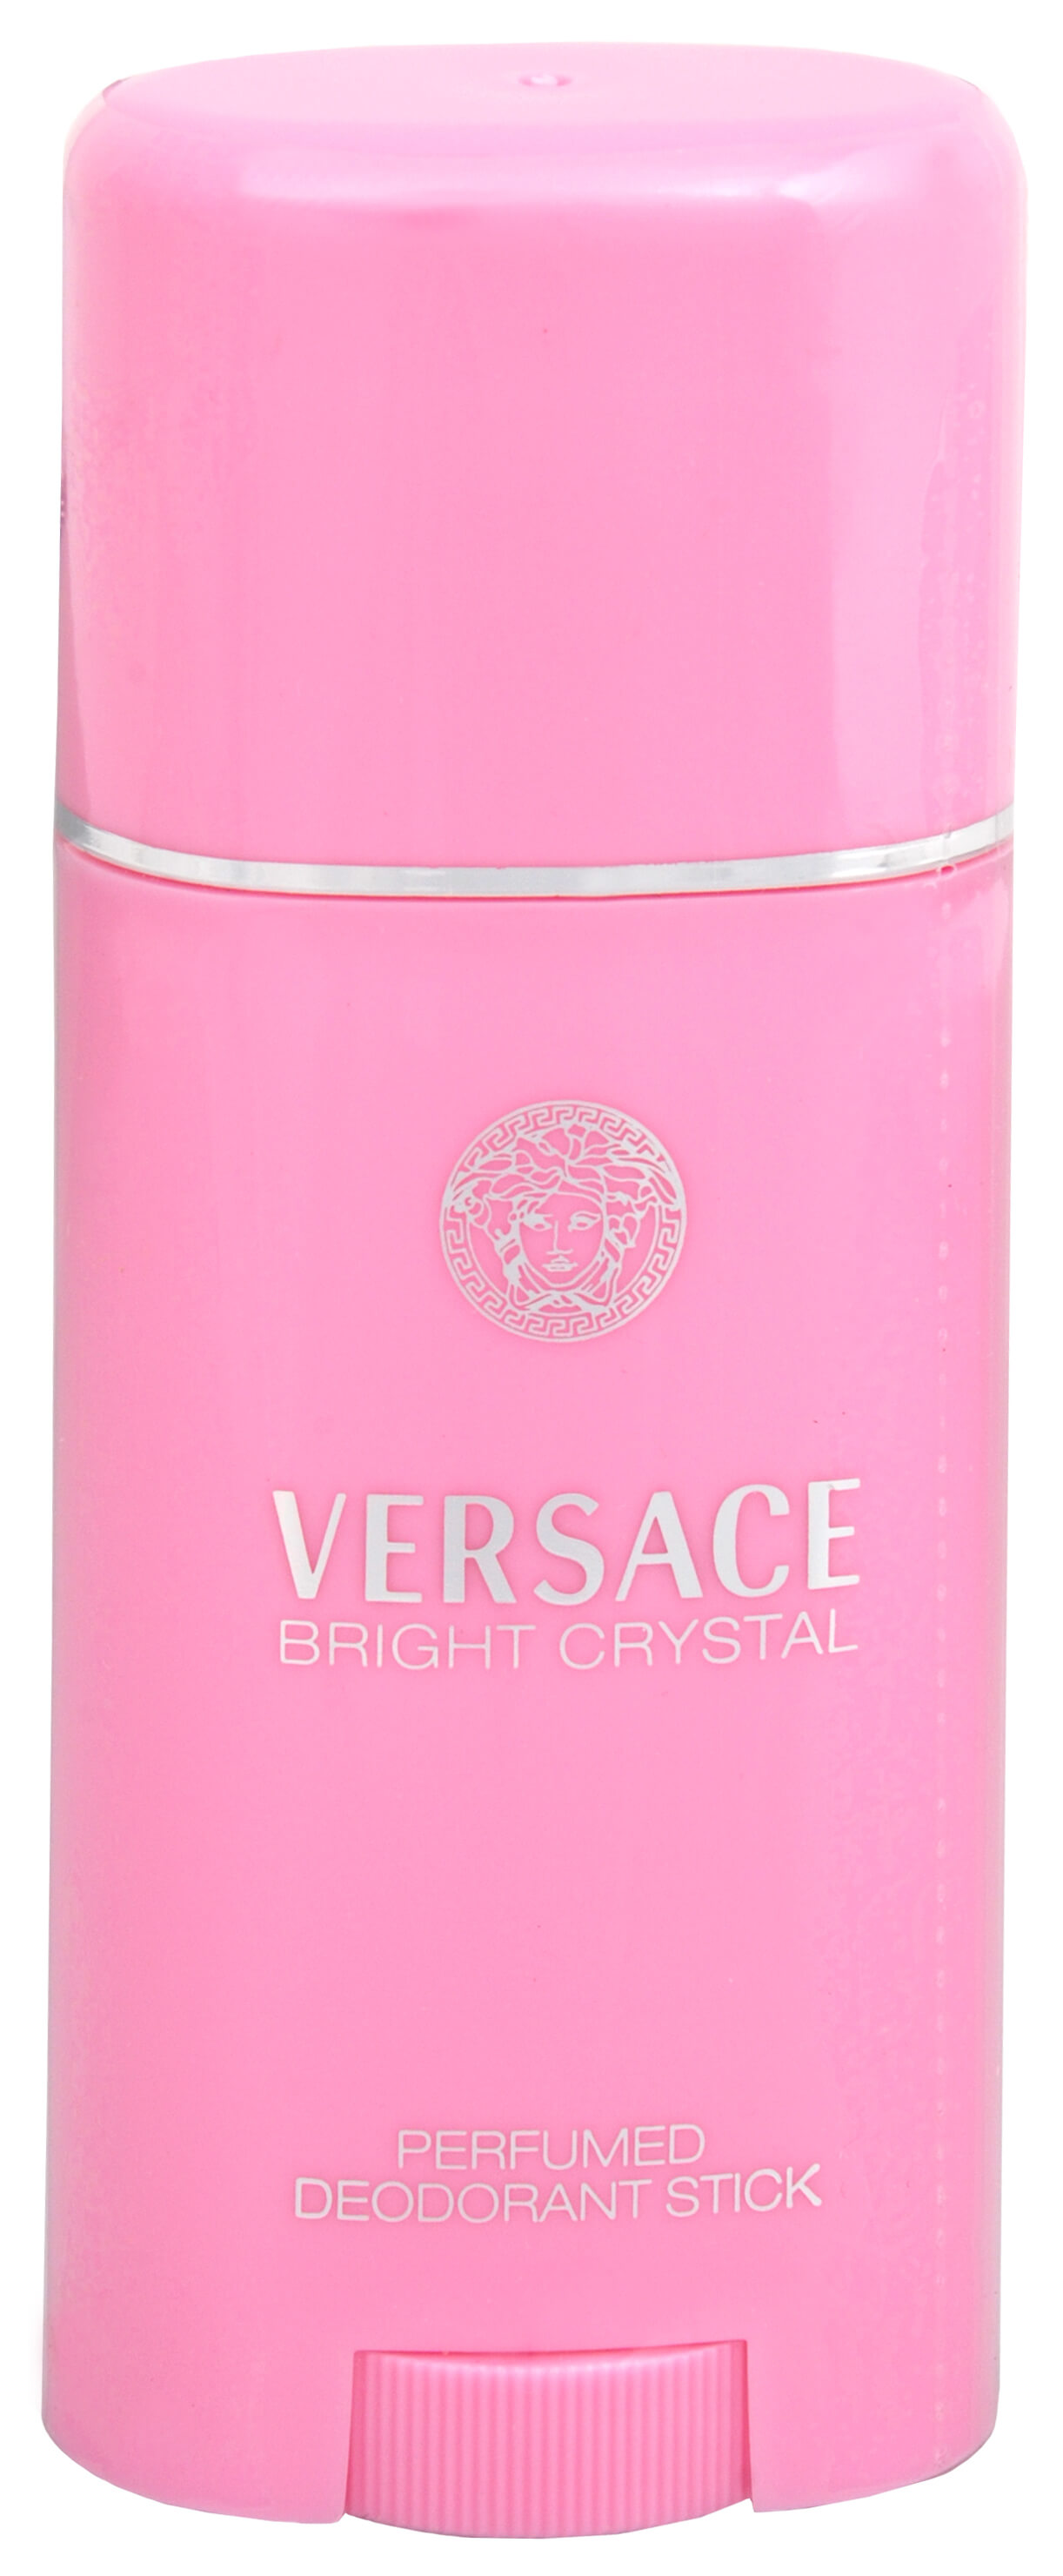 Versace Bright Crystal - tuhý deodorant 50 ml + 2 mesiace na vrátenie tovaru